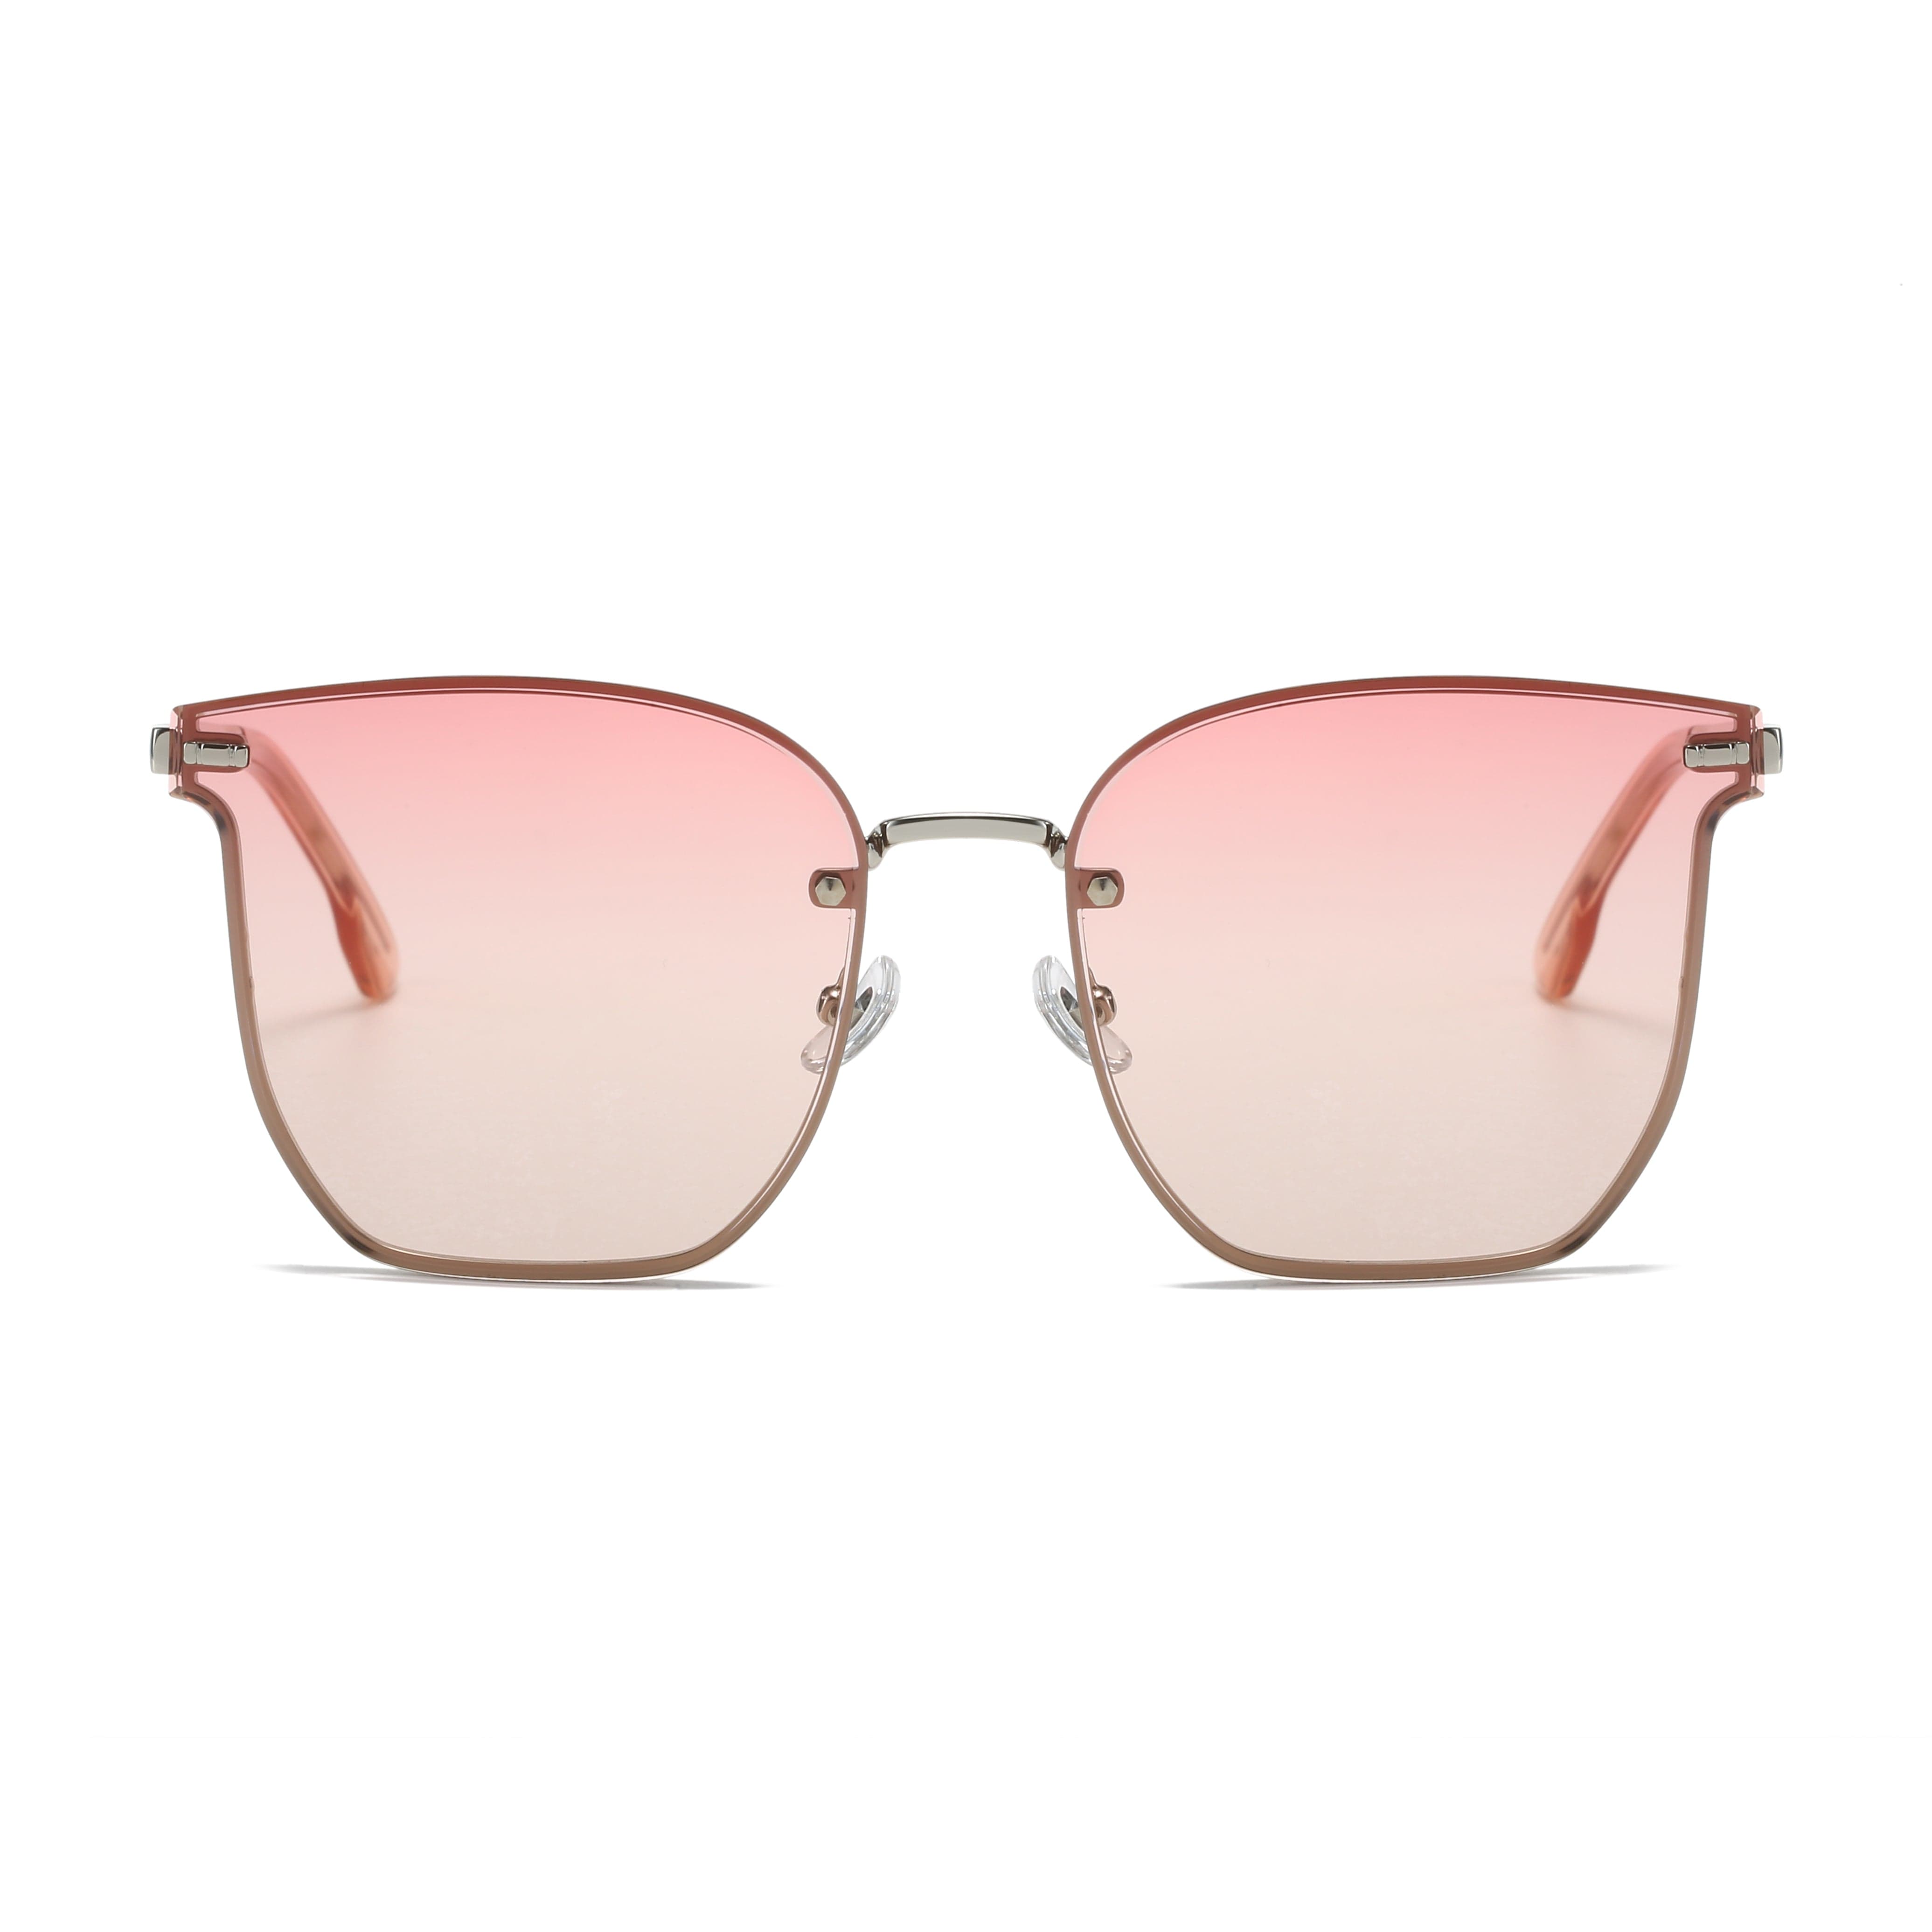 GIUSTIZIERI VECCHI Sunglasses Medium / Light Pink Golden Glimmer Duo